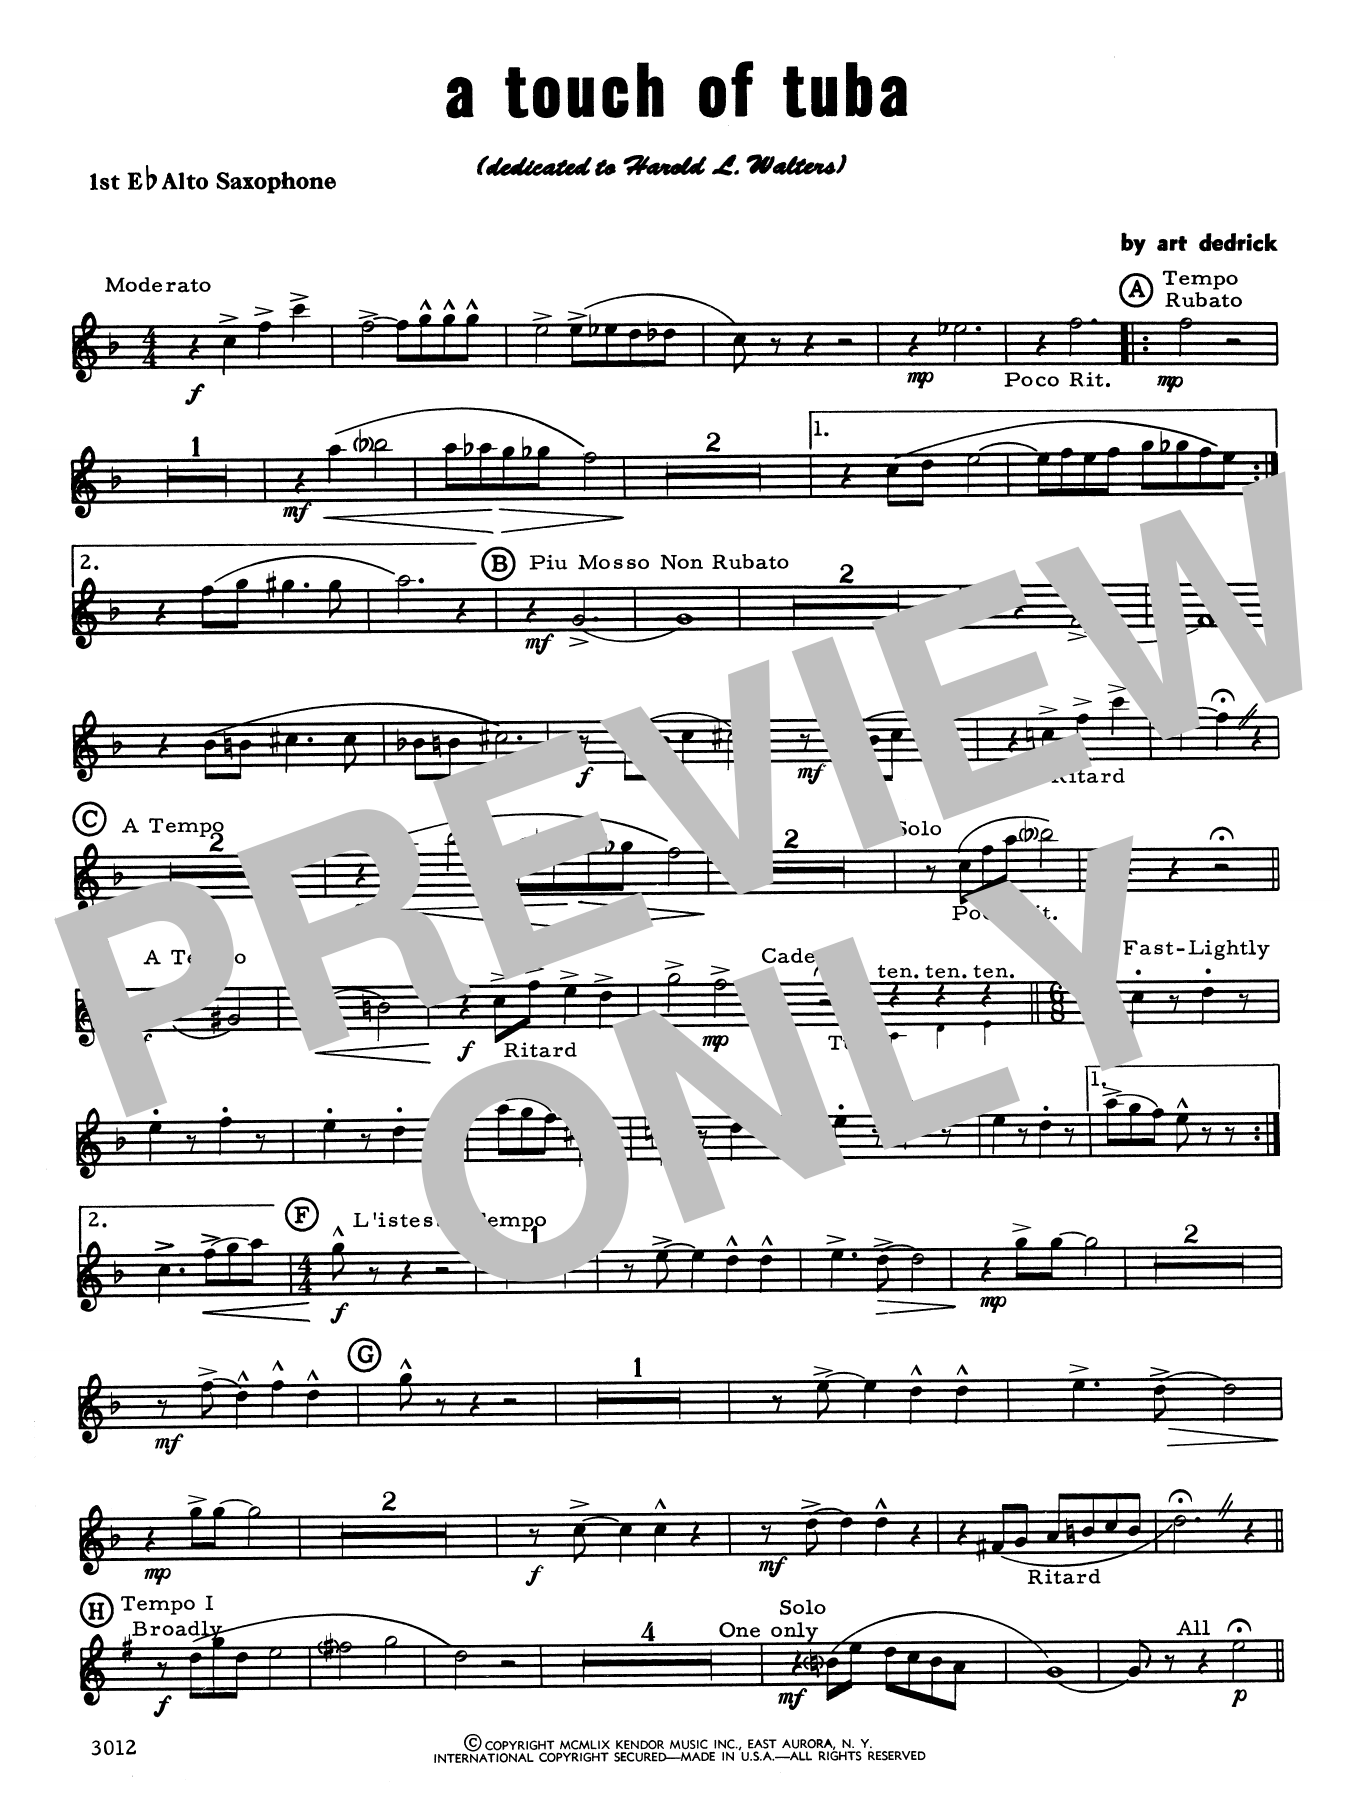 Download Art Dedrick A Touch Of Tuba - 1st Eb Alto Saxophone Sheet Music